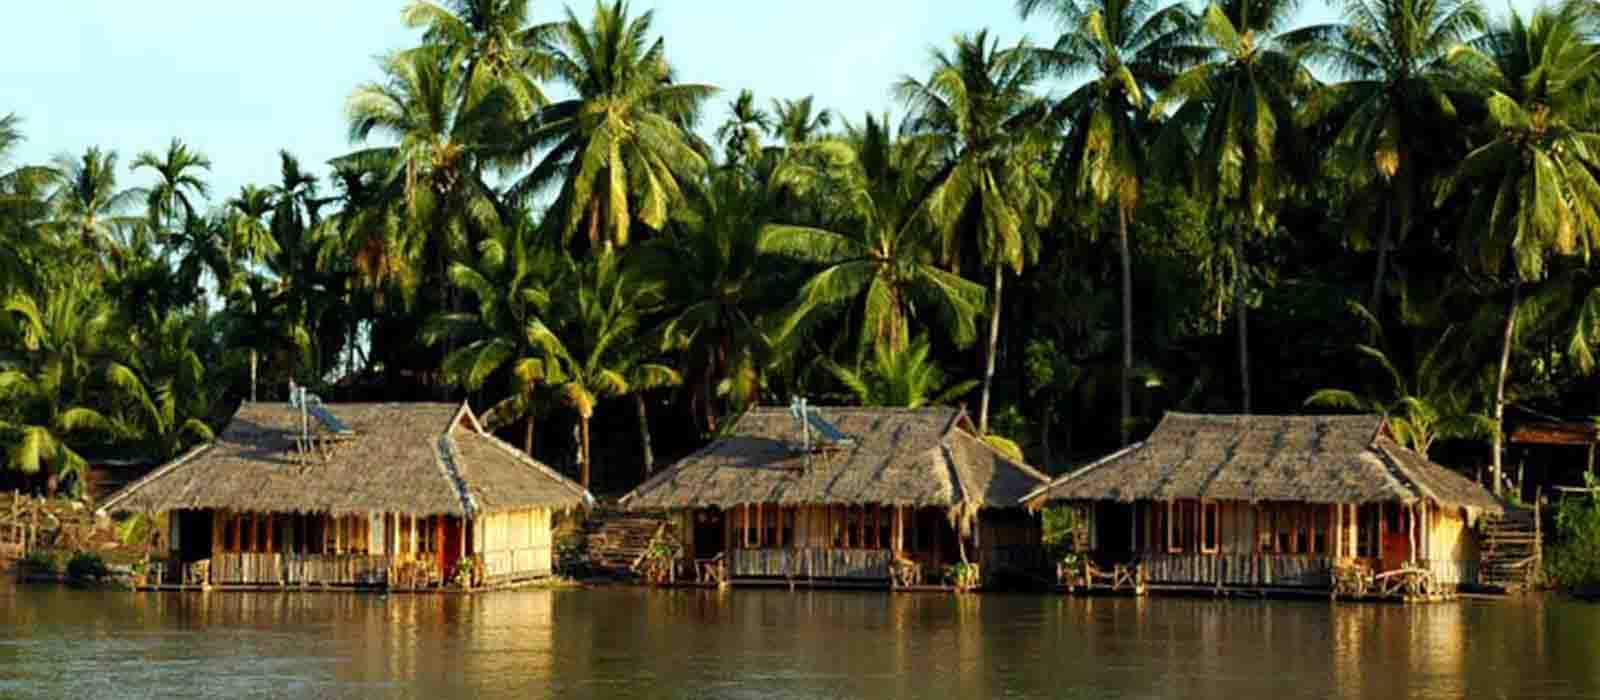 Tour locale in sampan nella zona delle 4000 isole-Siphadone